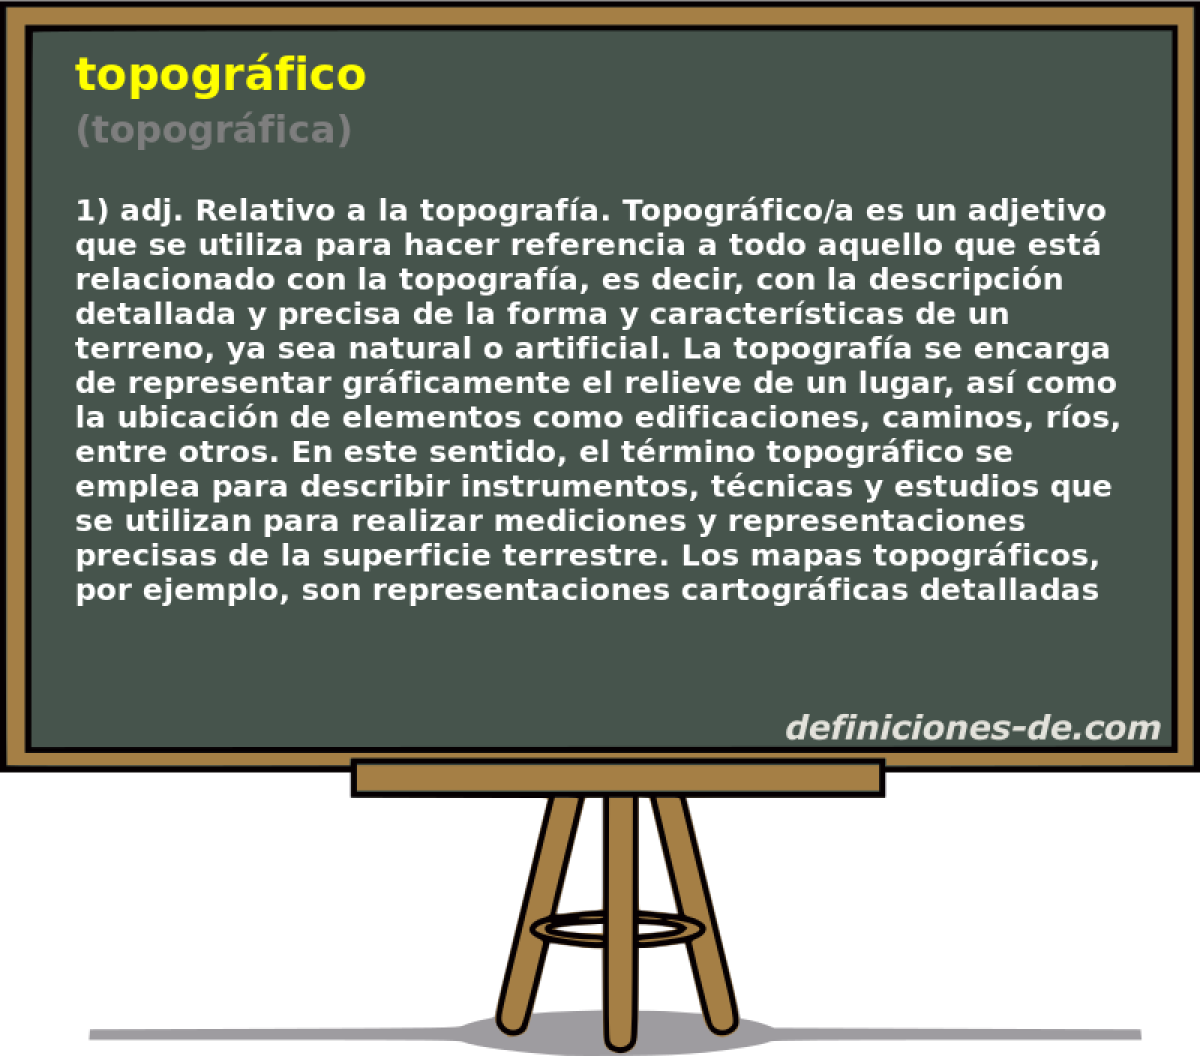 topogrfico (topogrfica)